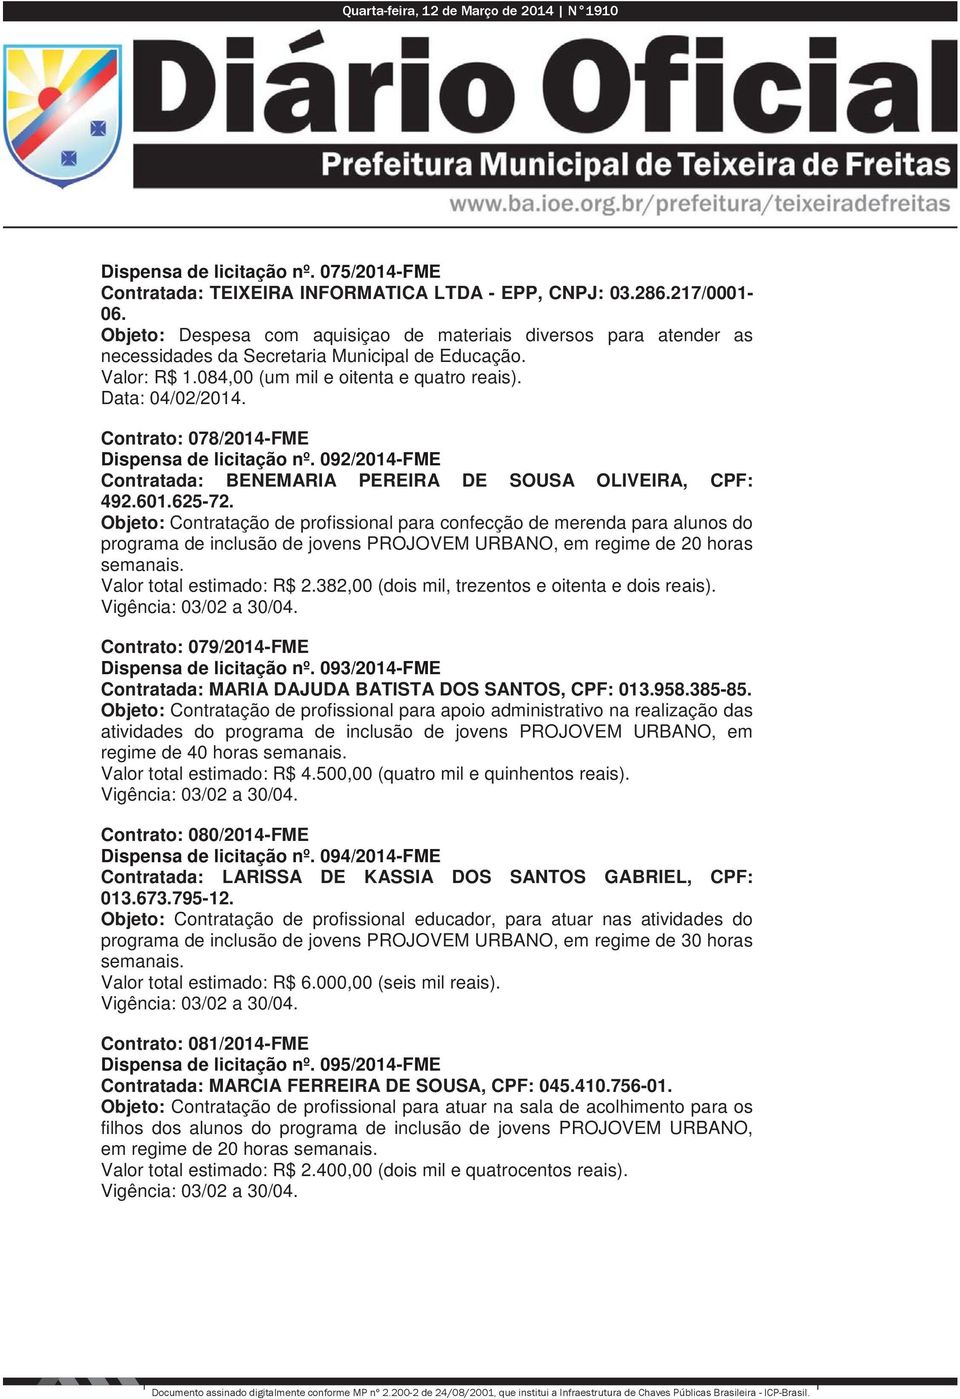 Contrato: 078/2014-FME Dispensa de licitação nº. 092/2014-FME Contratada: BENEMARIA PEREIRA DE SOUSA OLIVEIRA, CPF: 492.601.625-72.